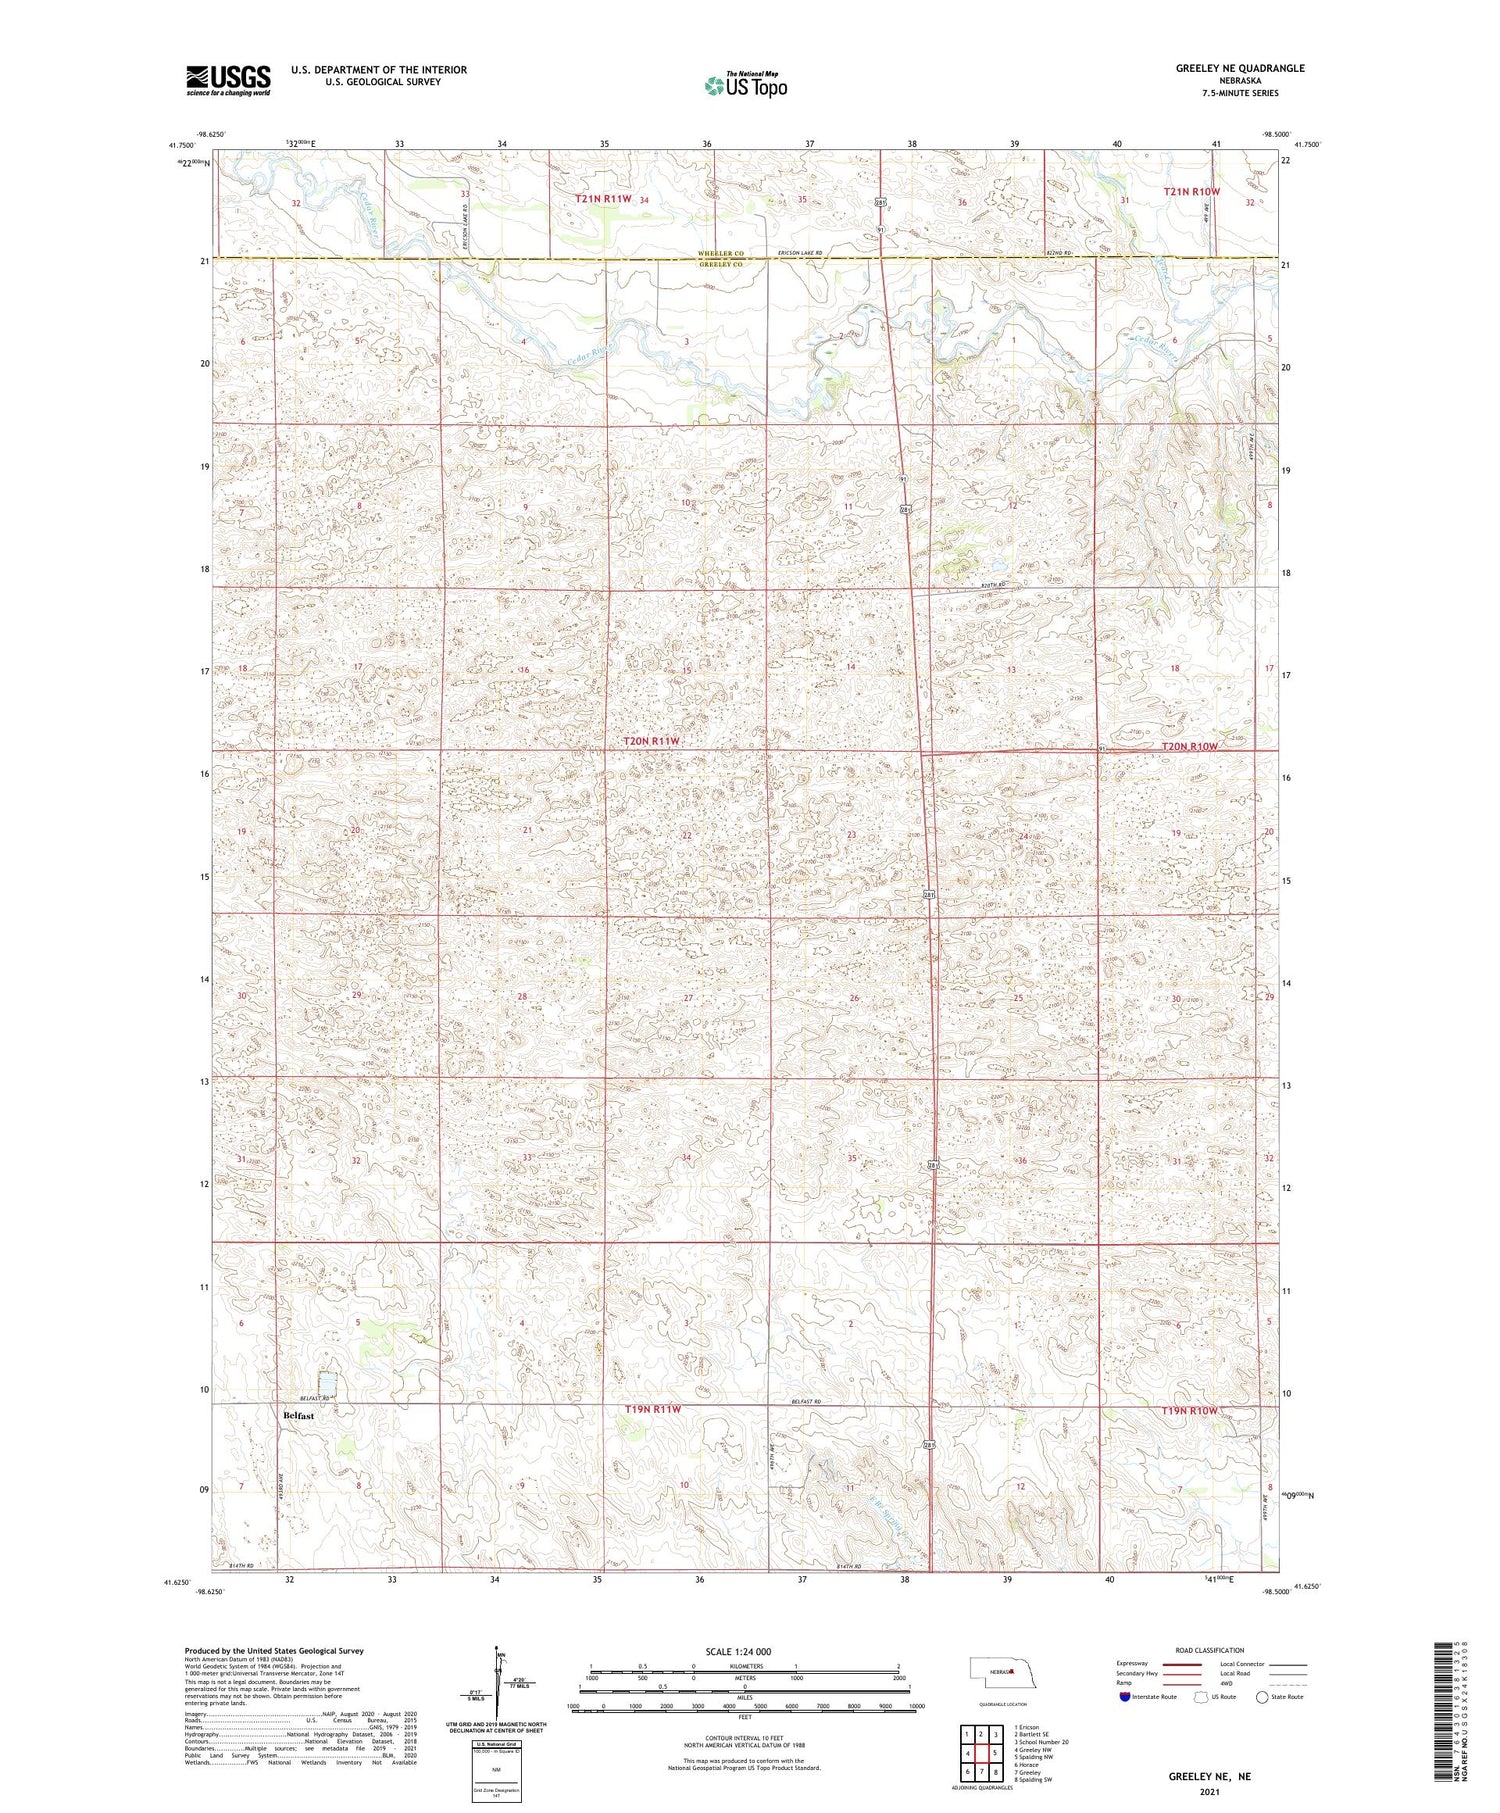 Greeley NE Nebraska US Topo Map Image